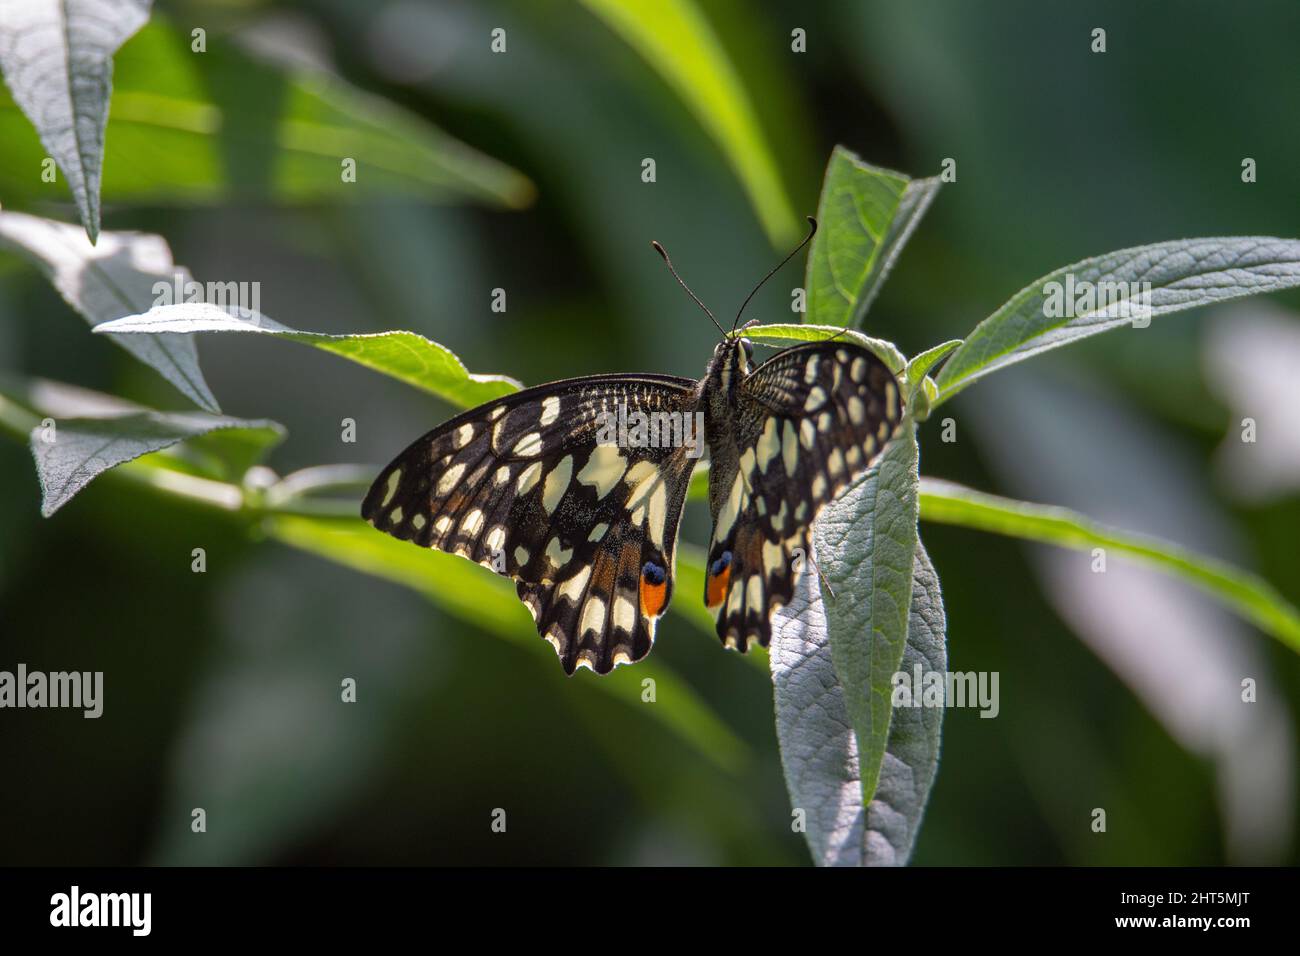 Ein hinterleuchteter Kalk-Schmetterling (Papilio demoleus malayanus), der auf einem grünen tropischen Blatt mit geöffneten Flügeln ruht Stockfoto